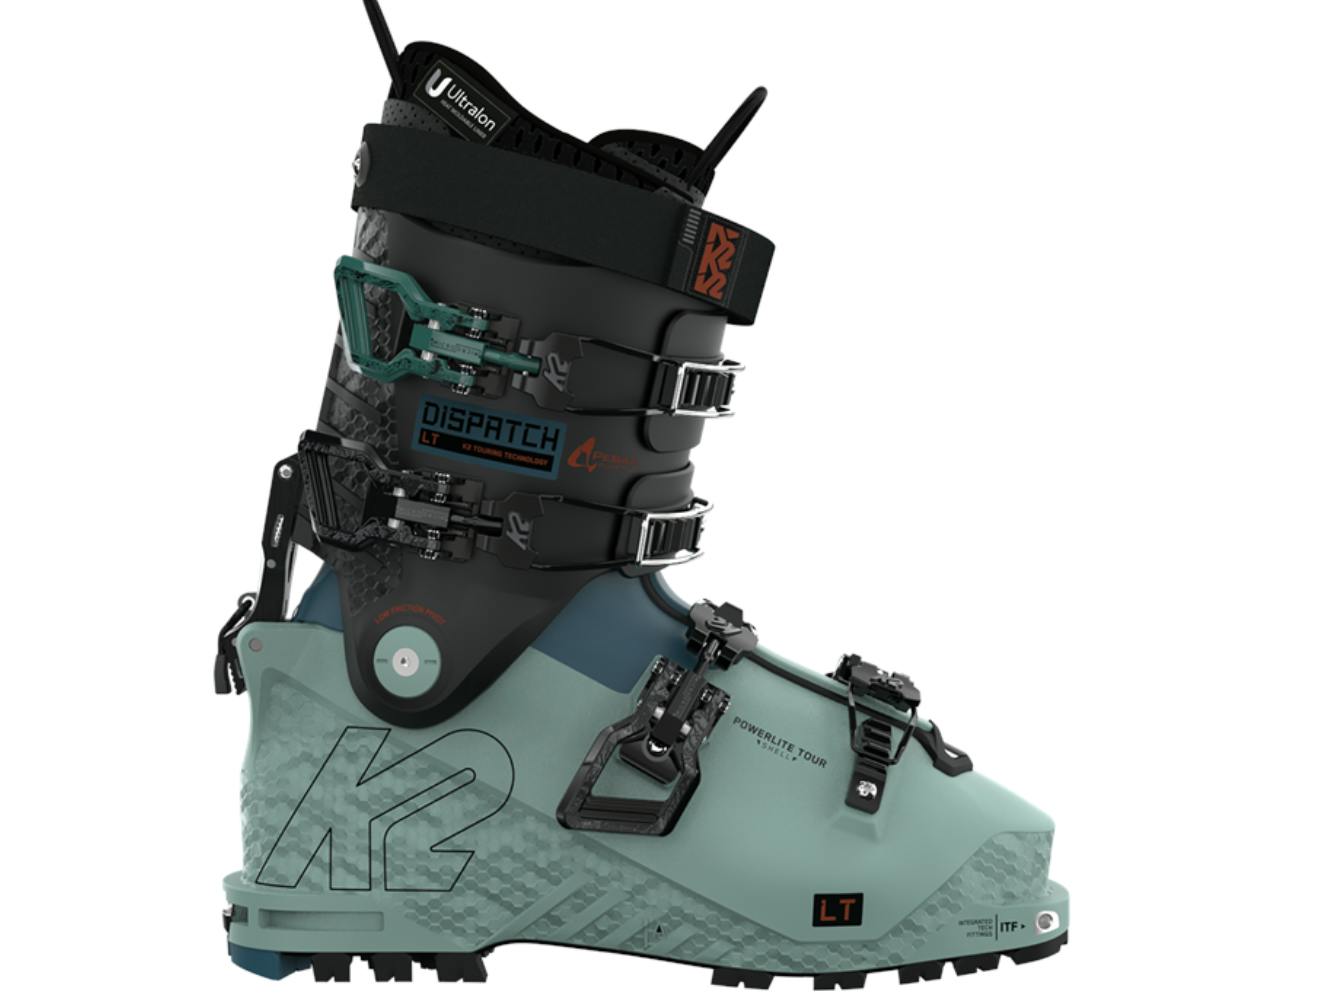 The K2 Dispatch LT W Ski Boots.